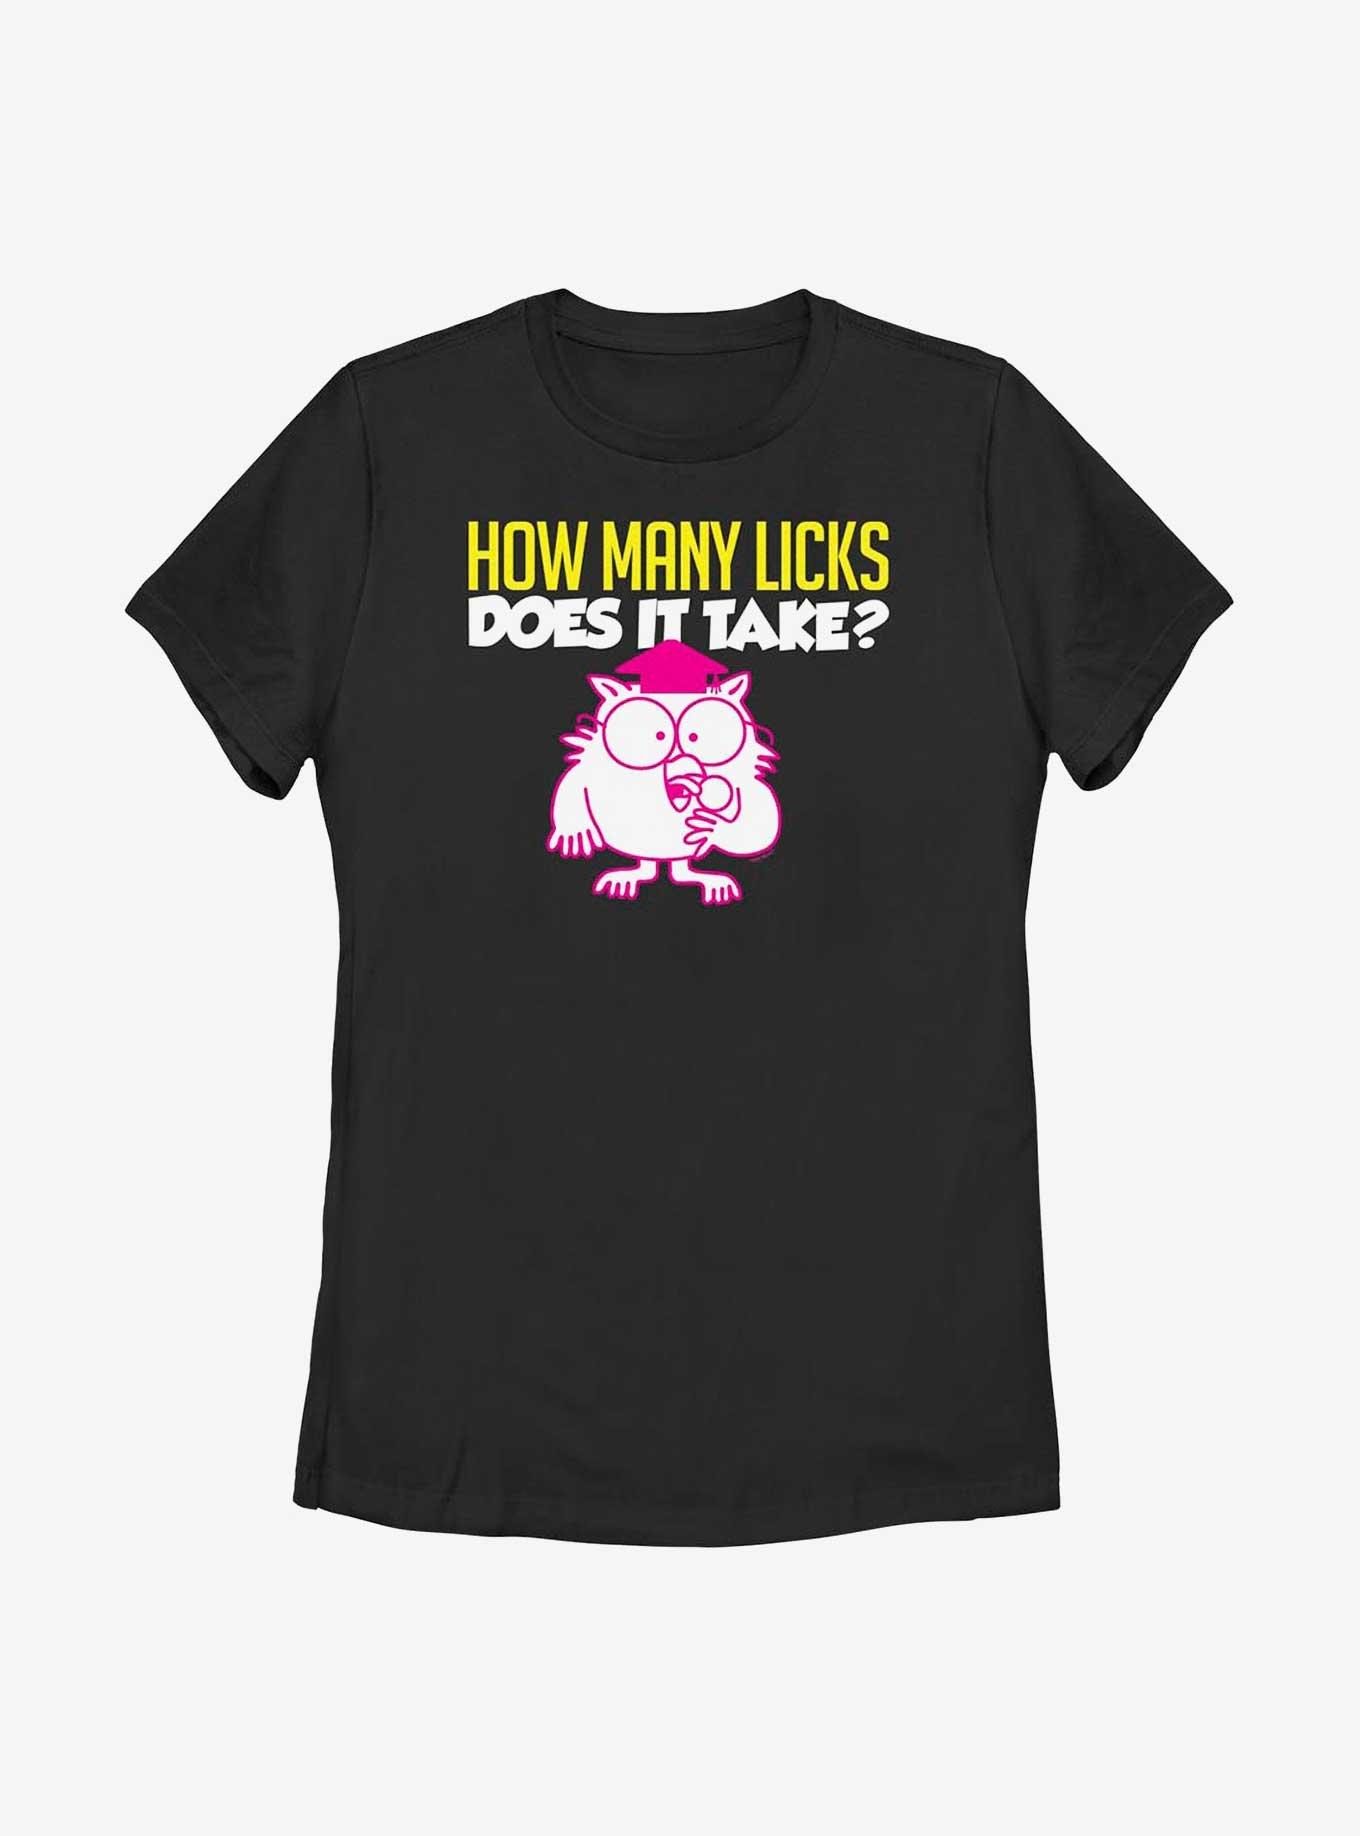 Tootsie Roll Mr. Owl How Many Licks Womens T-Shirt, BLACK, hi-res